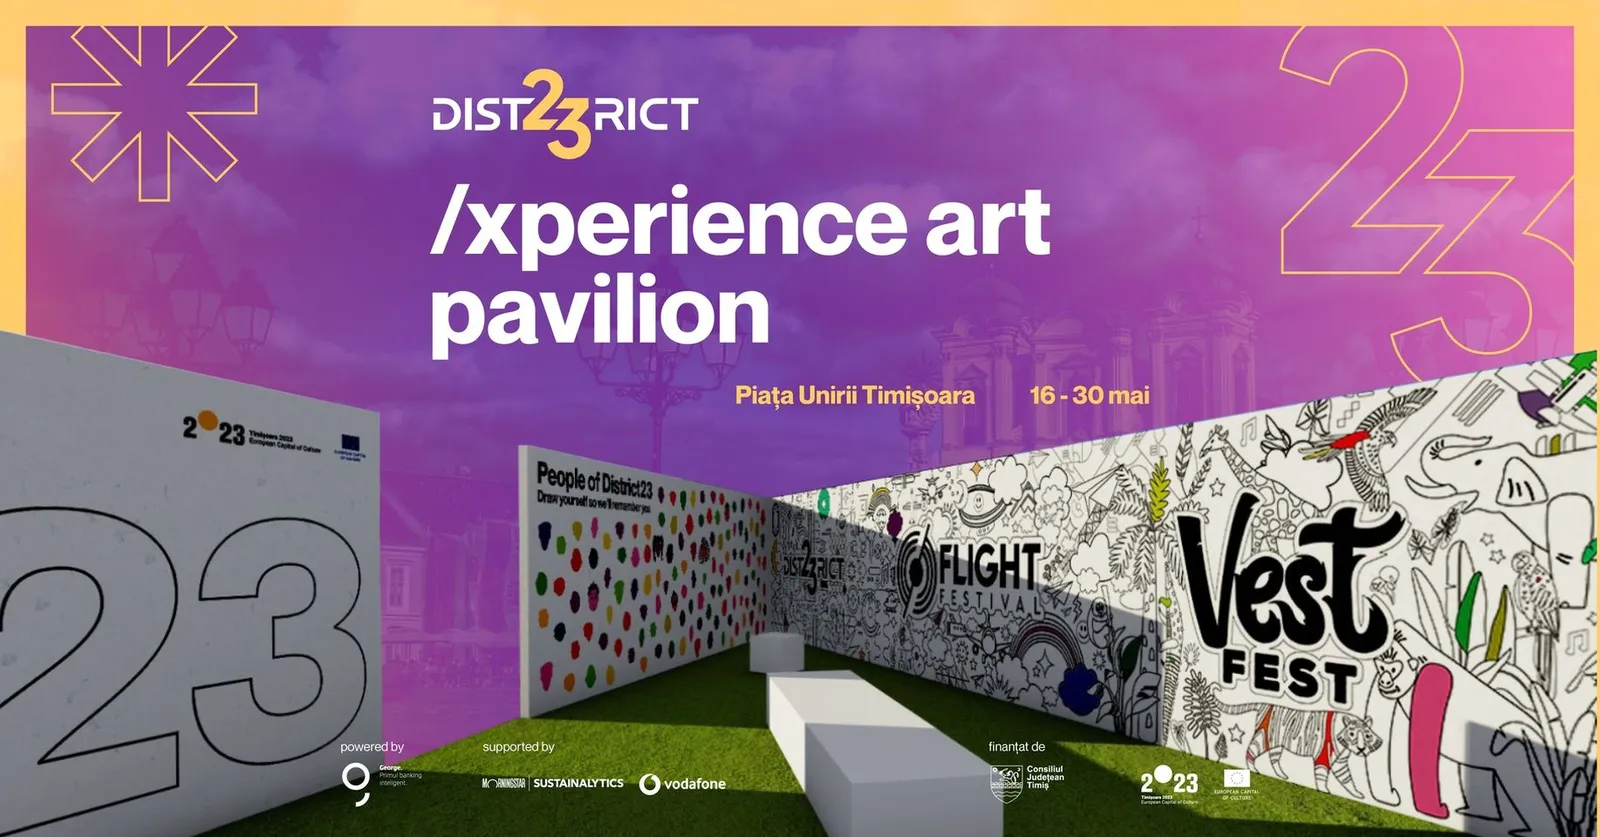 District23 Art Pavilion